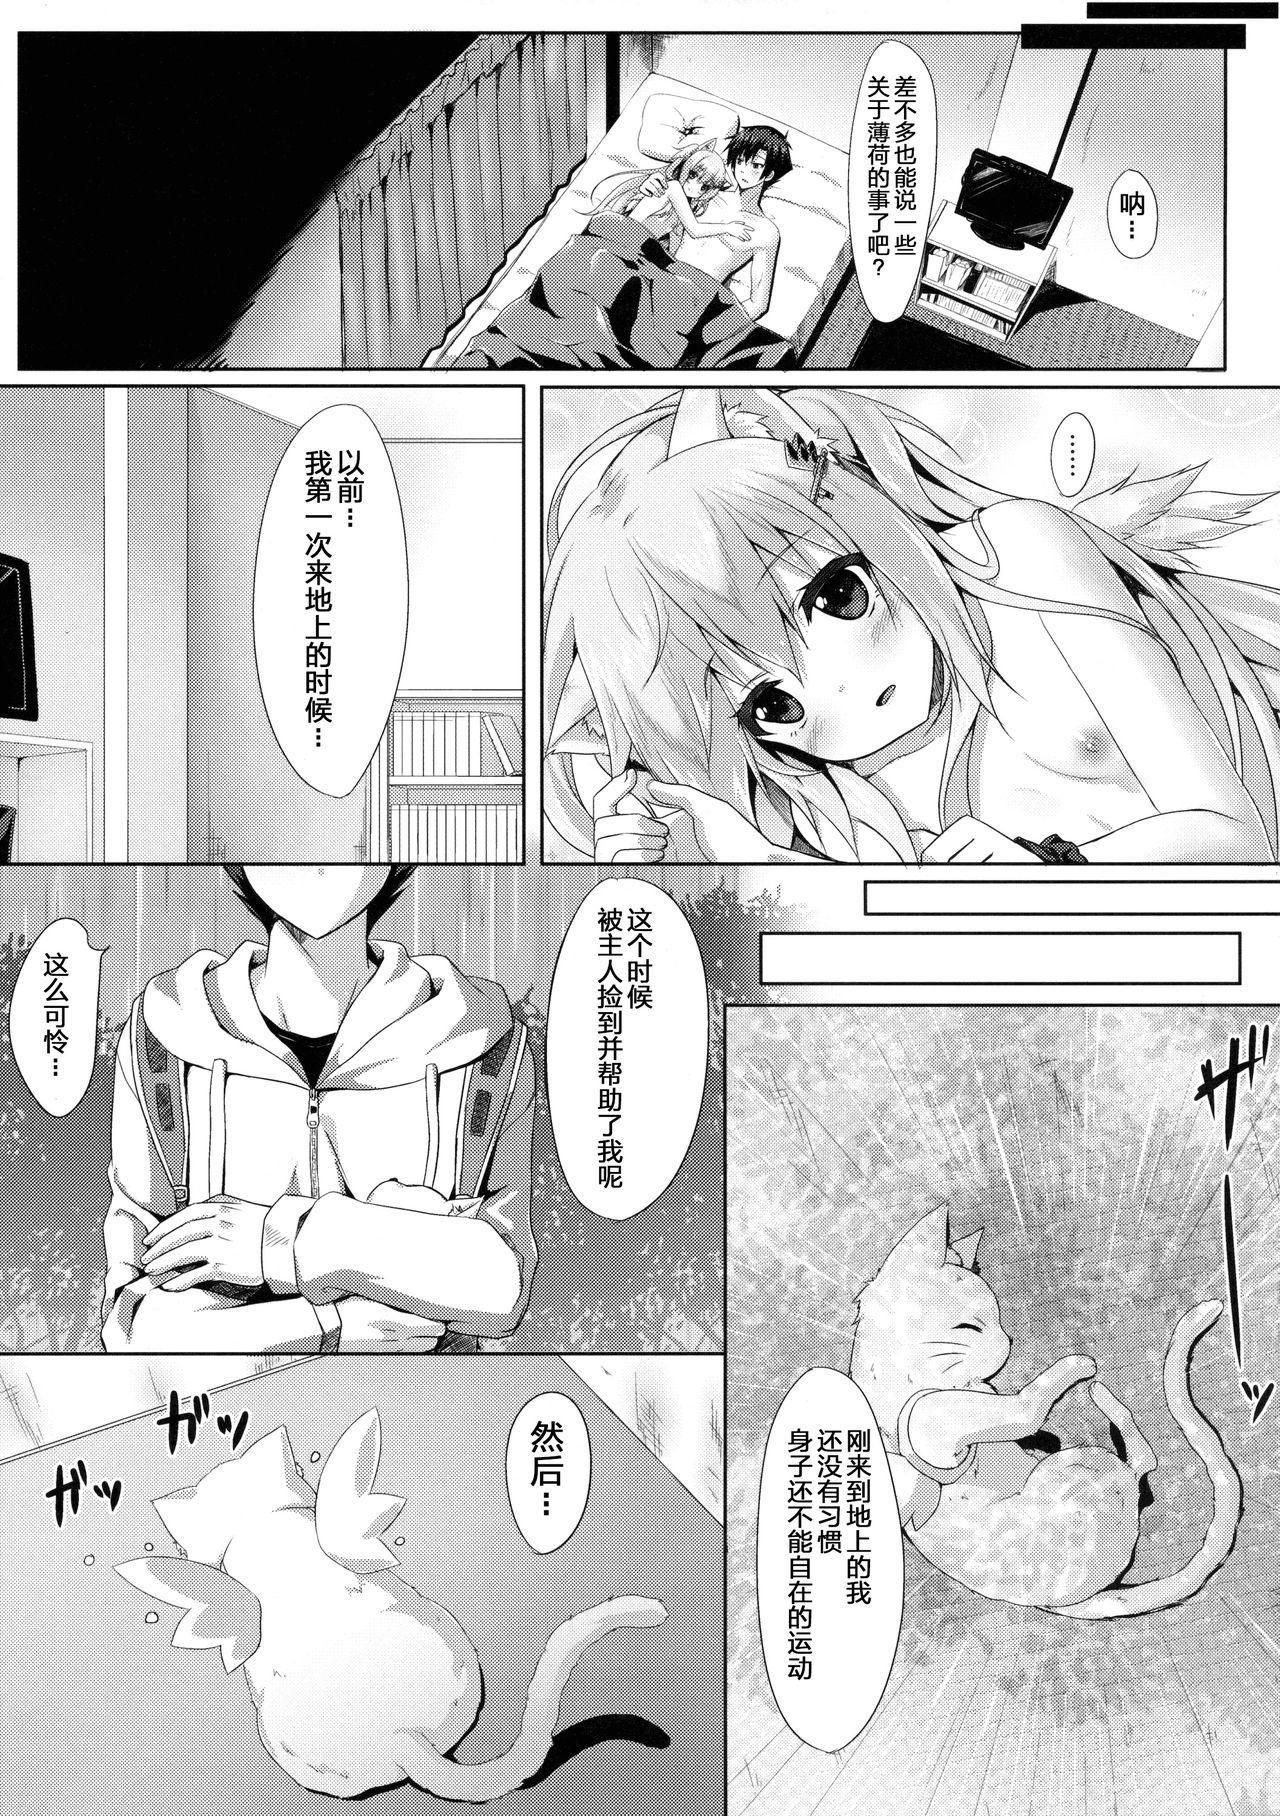 Mum Uchi no Pet Jijou 2 Fantasy - Page 7